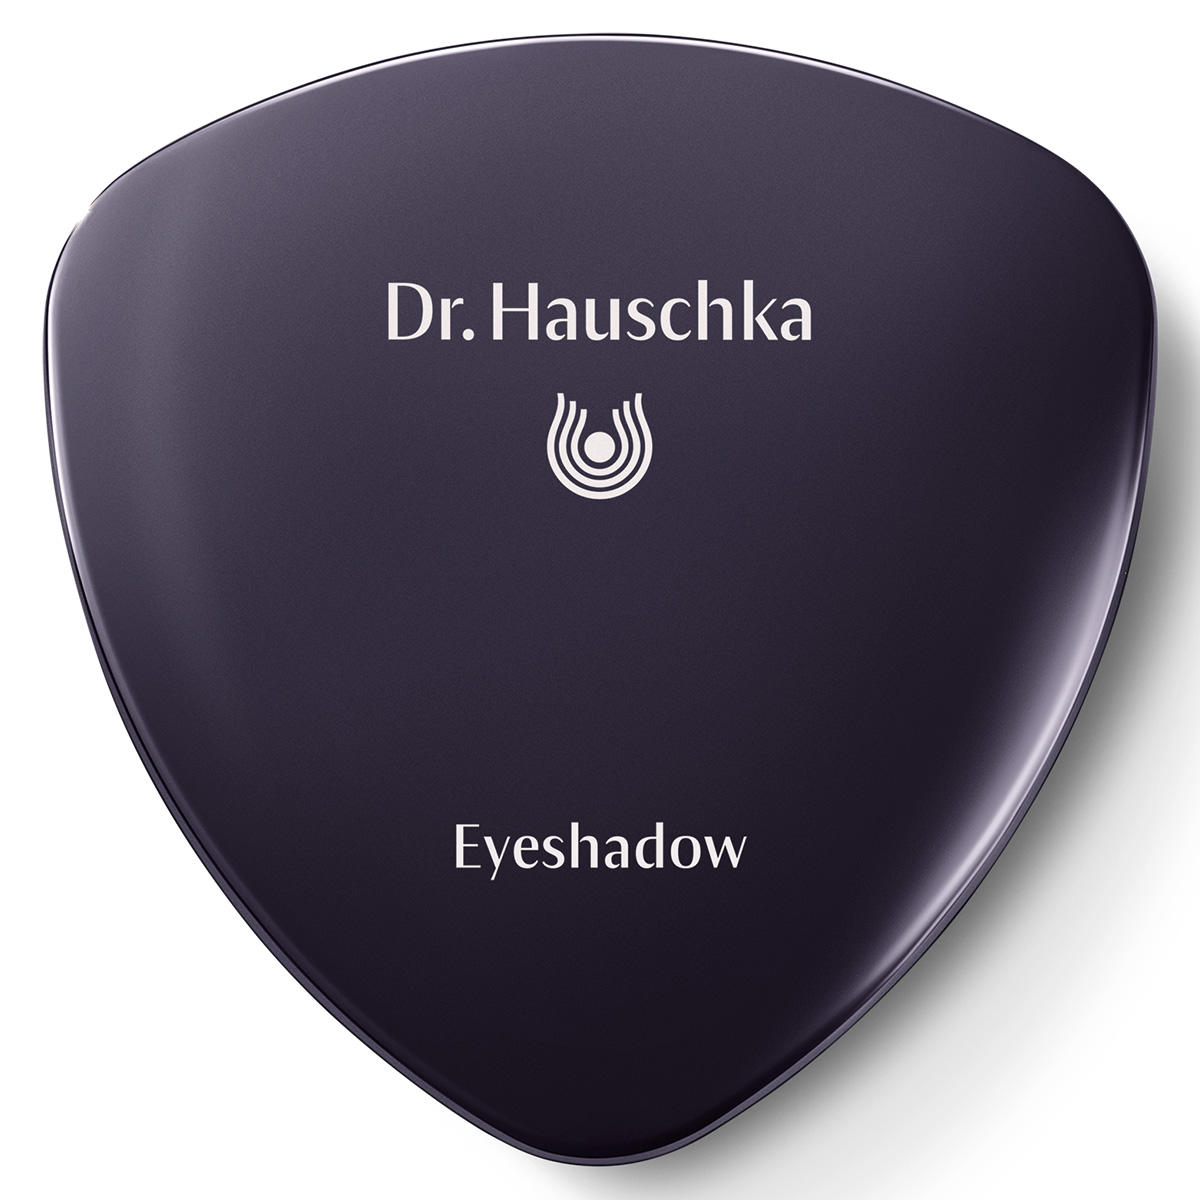 Dr. Hauschka Eyeshadow 04 verdelite, inhoud 1,4 g - 2